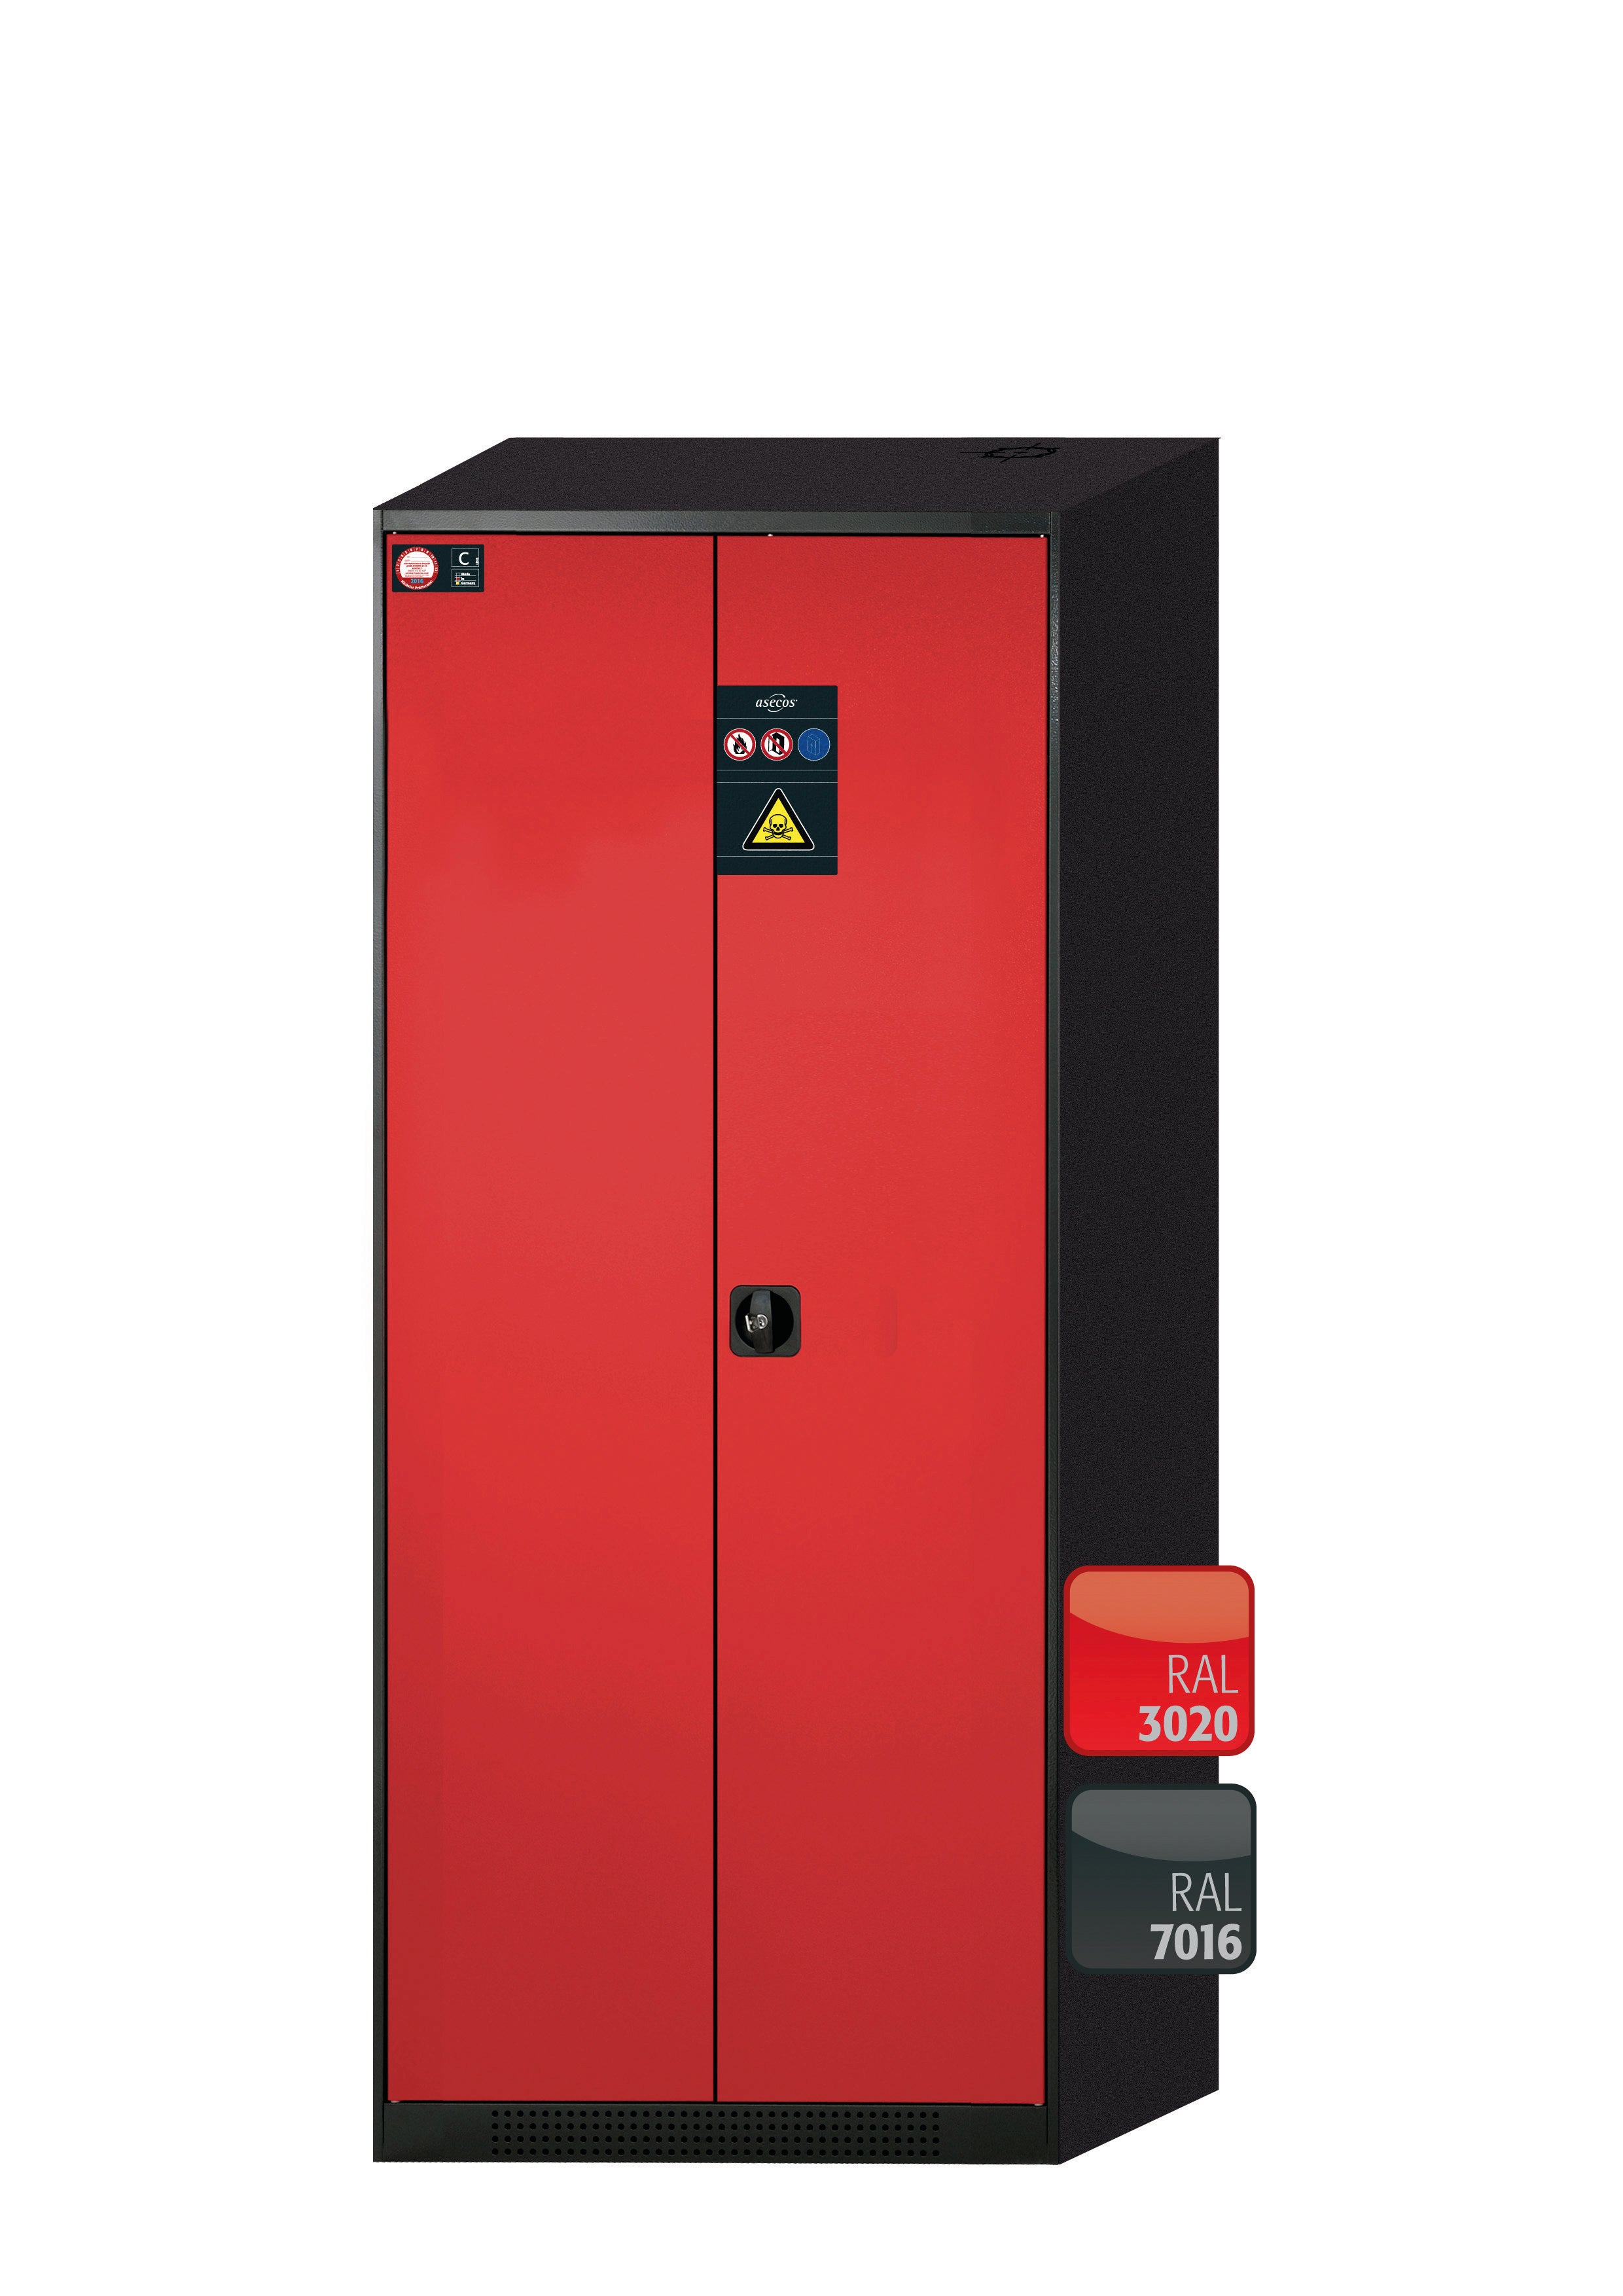 Armoire chimique CS-CLASSIC modèle CS.195.081 en rouge signalisation RAL 3020 avec 3x étagères standard (tôle d'acier)